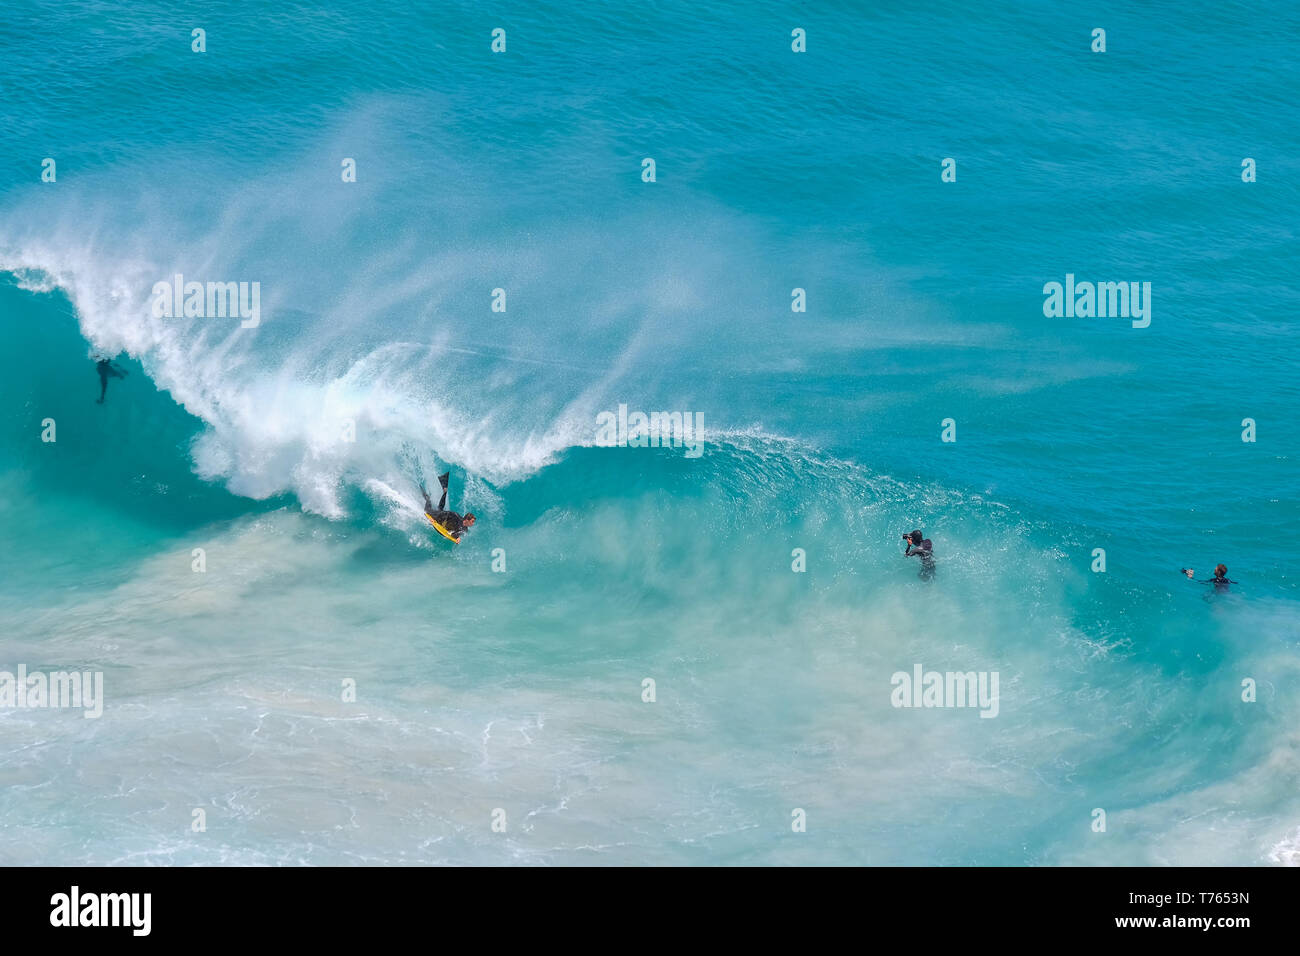 Portrait de personnes le surf sur une vague dans l'eau turquoise en Afrique du Sud Banque D'Images